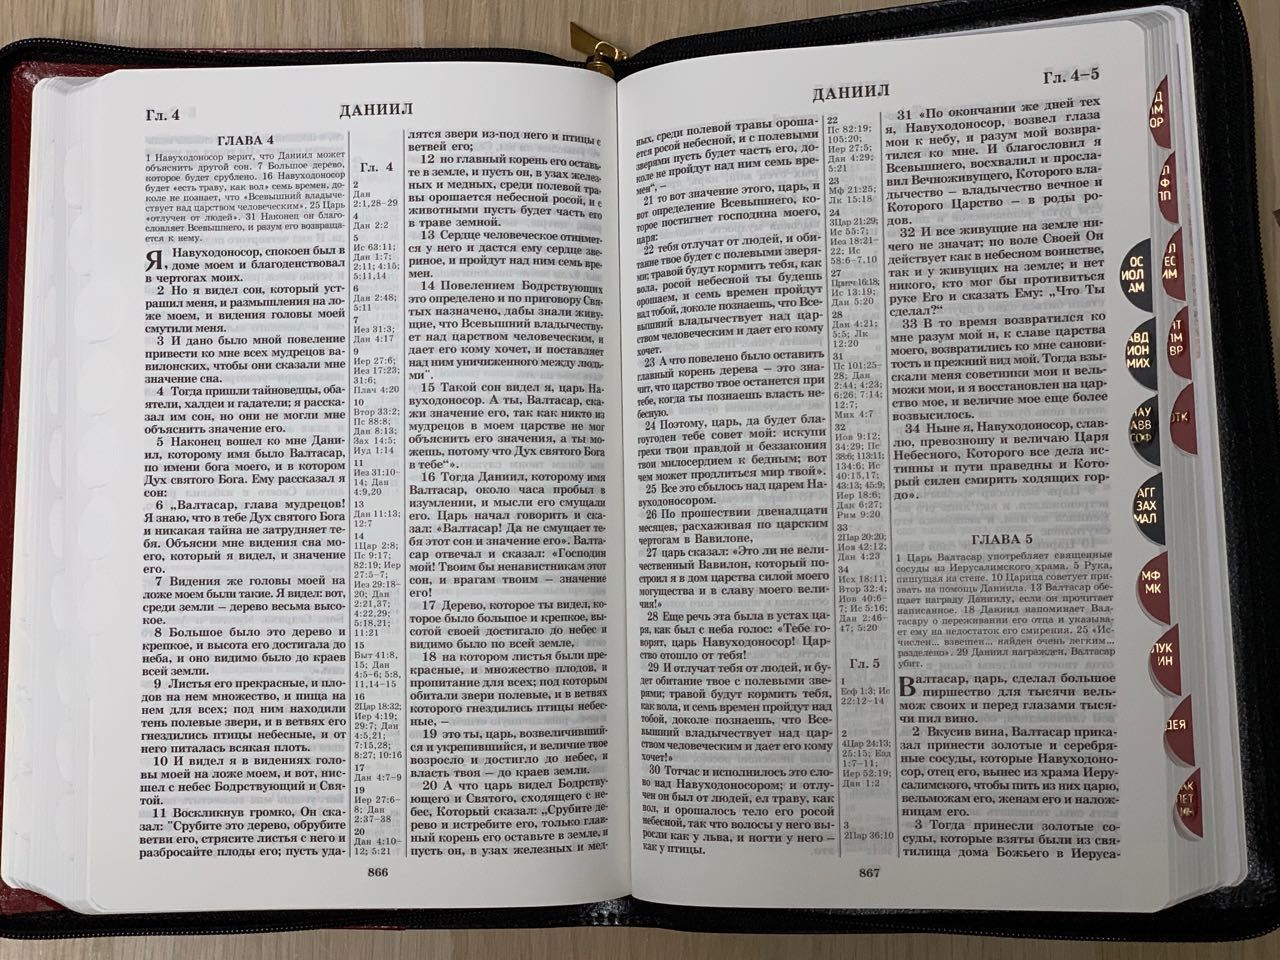 БИБЛИЯ 077DTzti формат, переплет из натуральной кожи на молнии с индексами, надпись золотом "Библия", цвет черный/ светлокоричневый пятнистый, большой формат, 180*260 мм, цветные карты, крупный шрифт